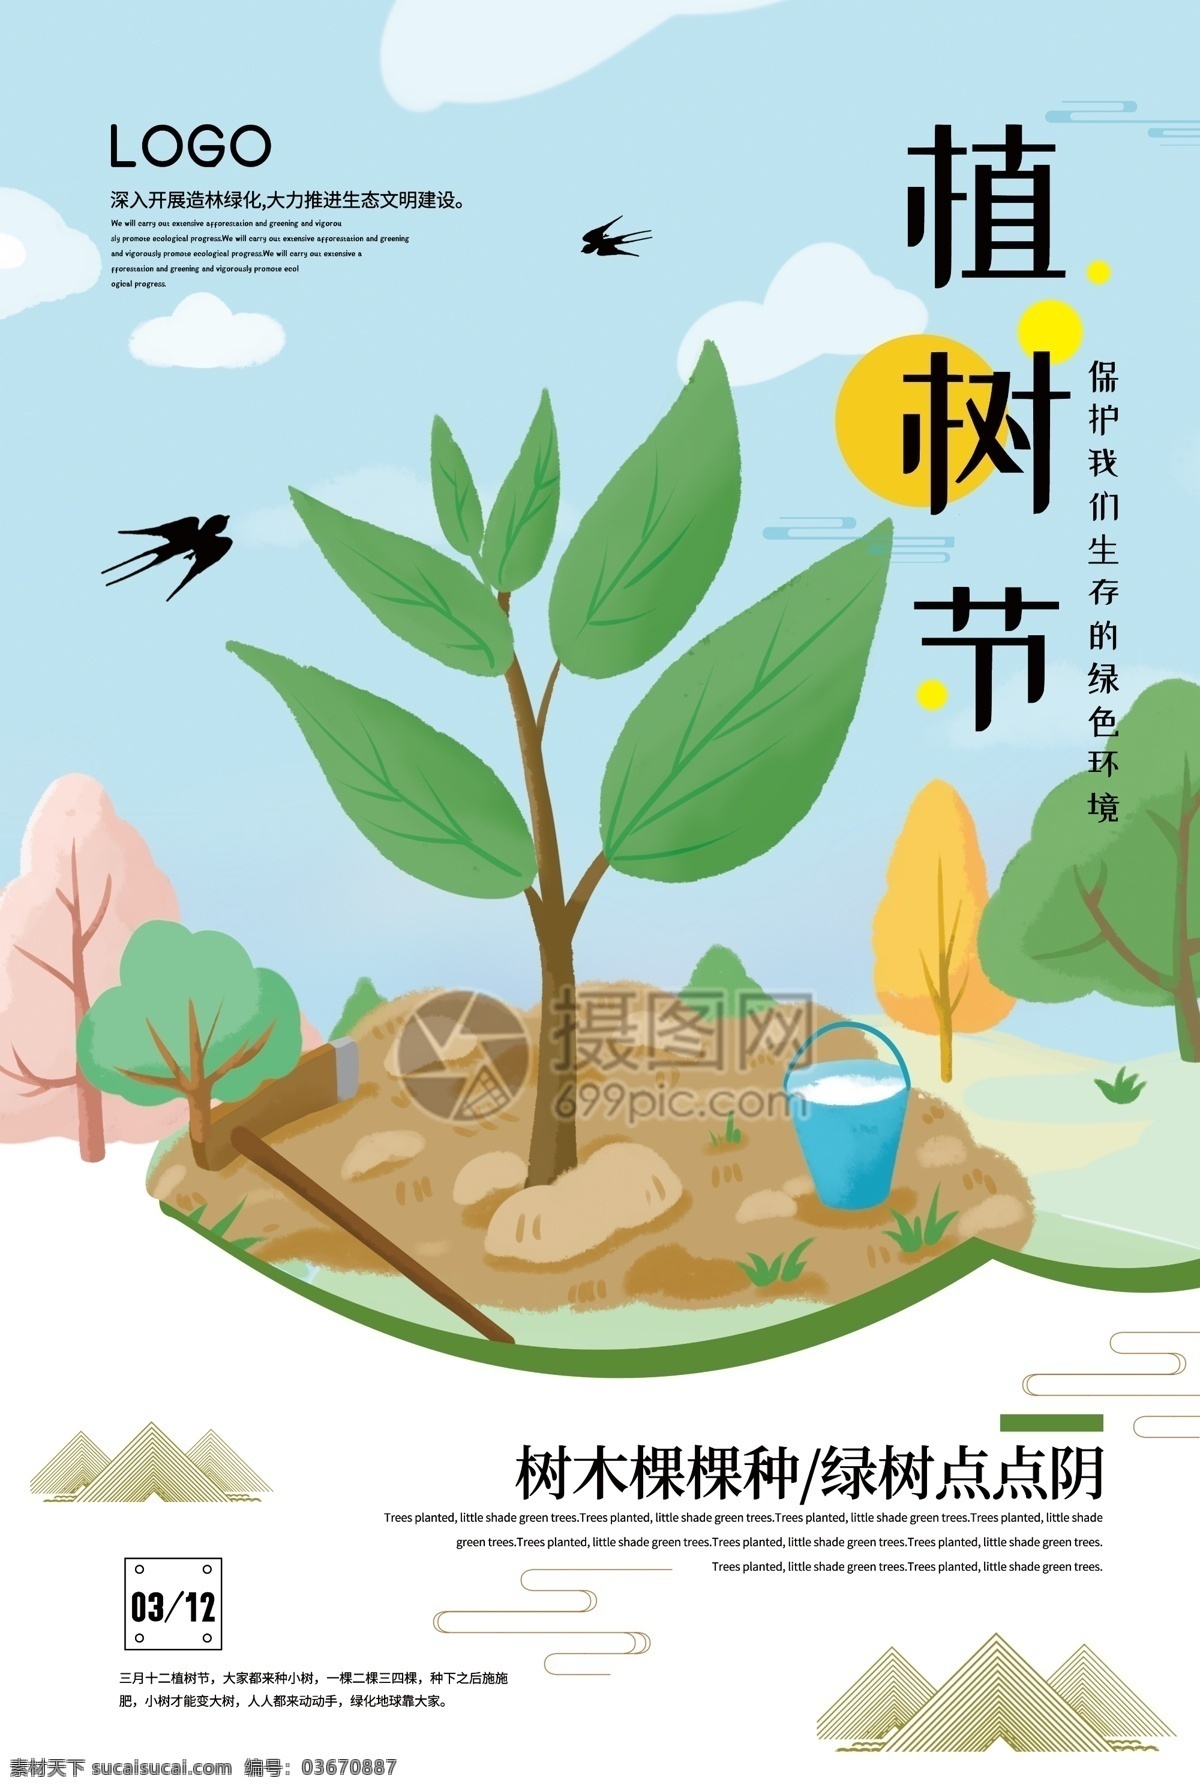 清新 简洁 插画风 绿色 种植 生态 希望 美好 播种 植树节 插 画风 海报 3月12日 植树节海报